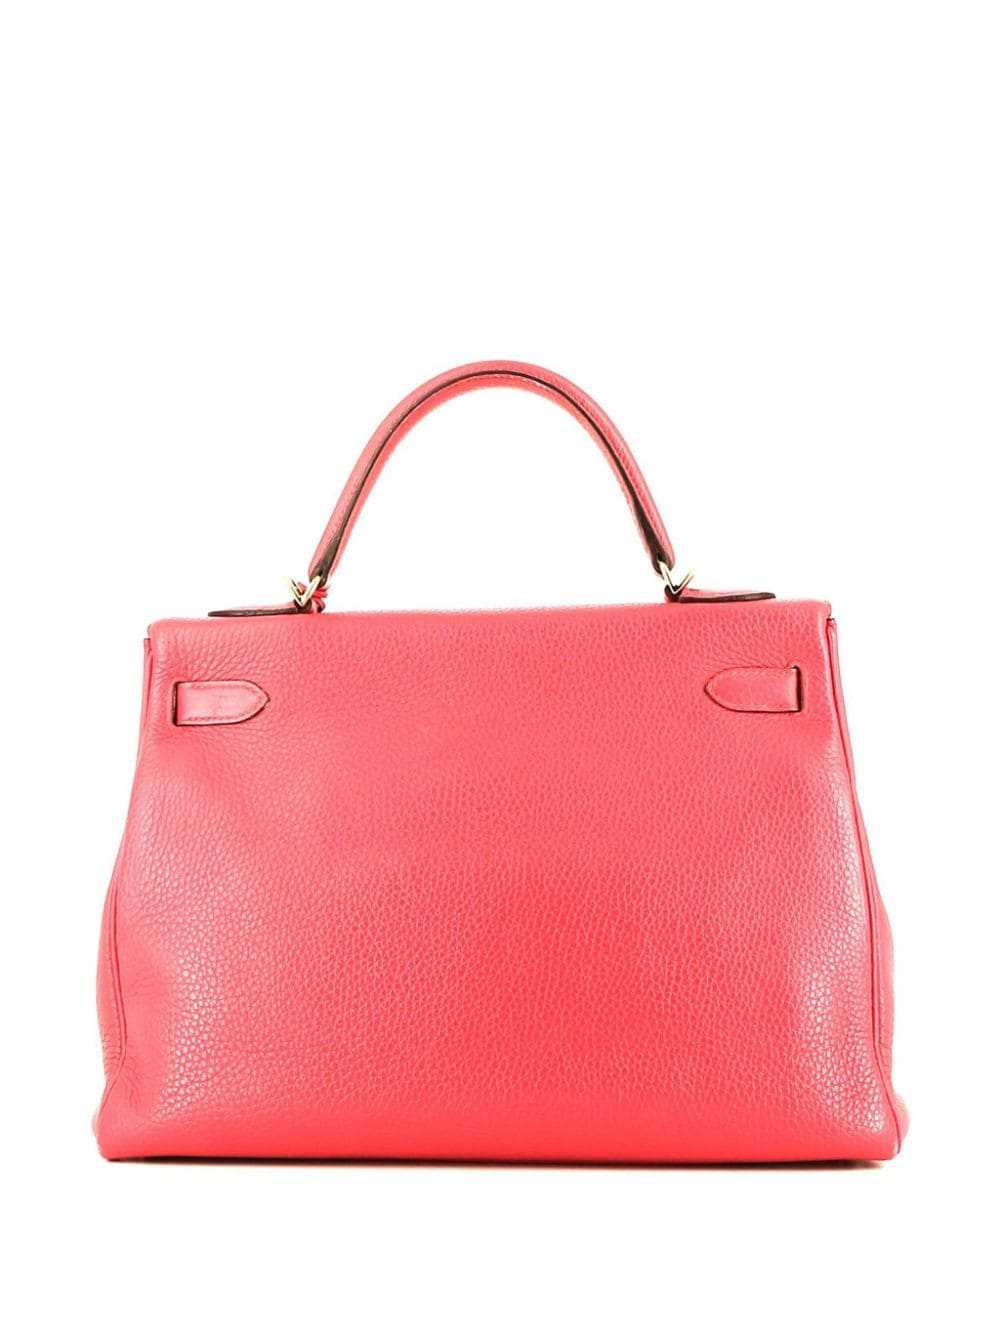 Hermès Pre-Owned Kelly 32 Retourne handbag - Pink - image 2